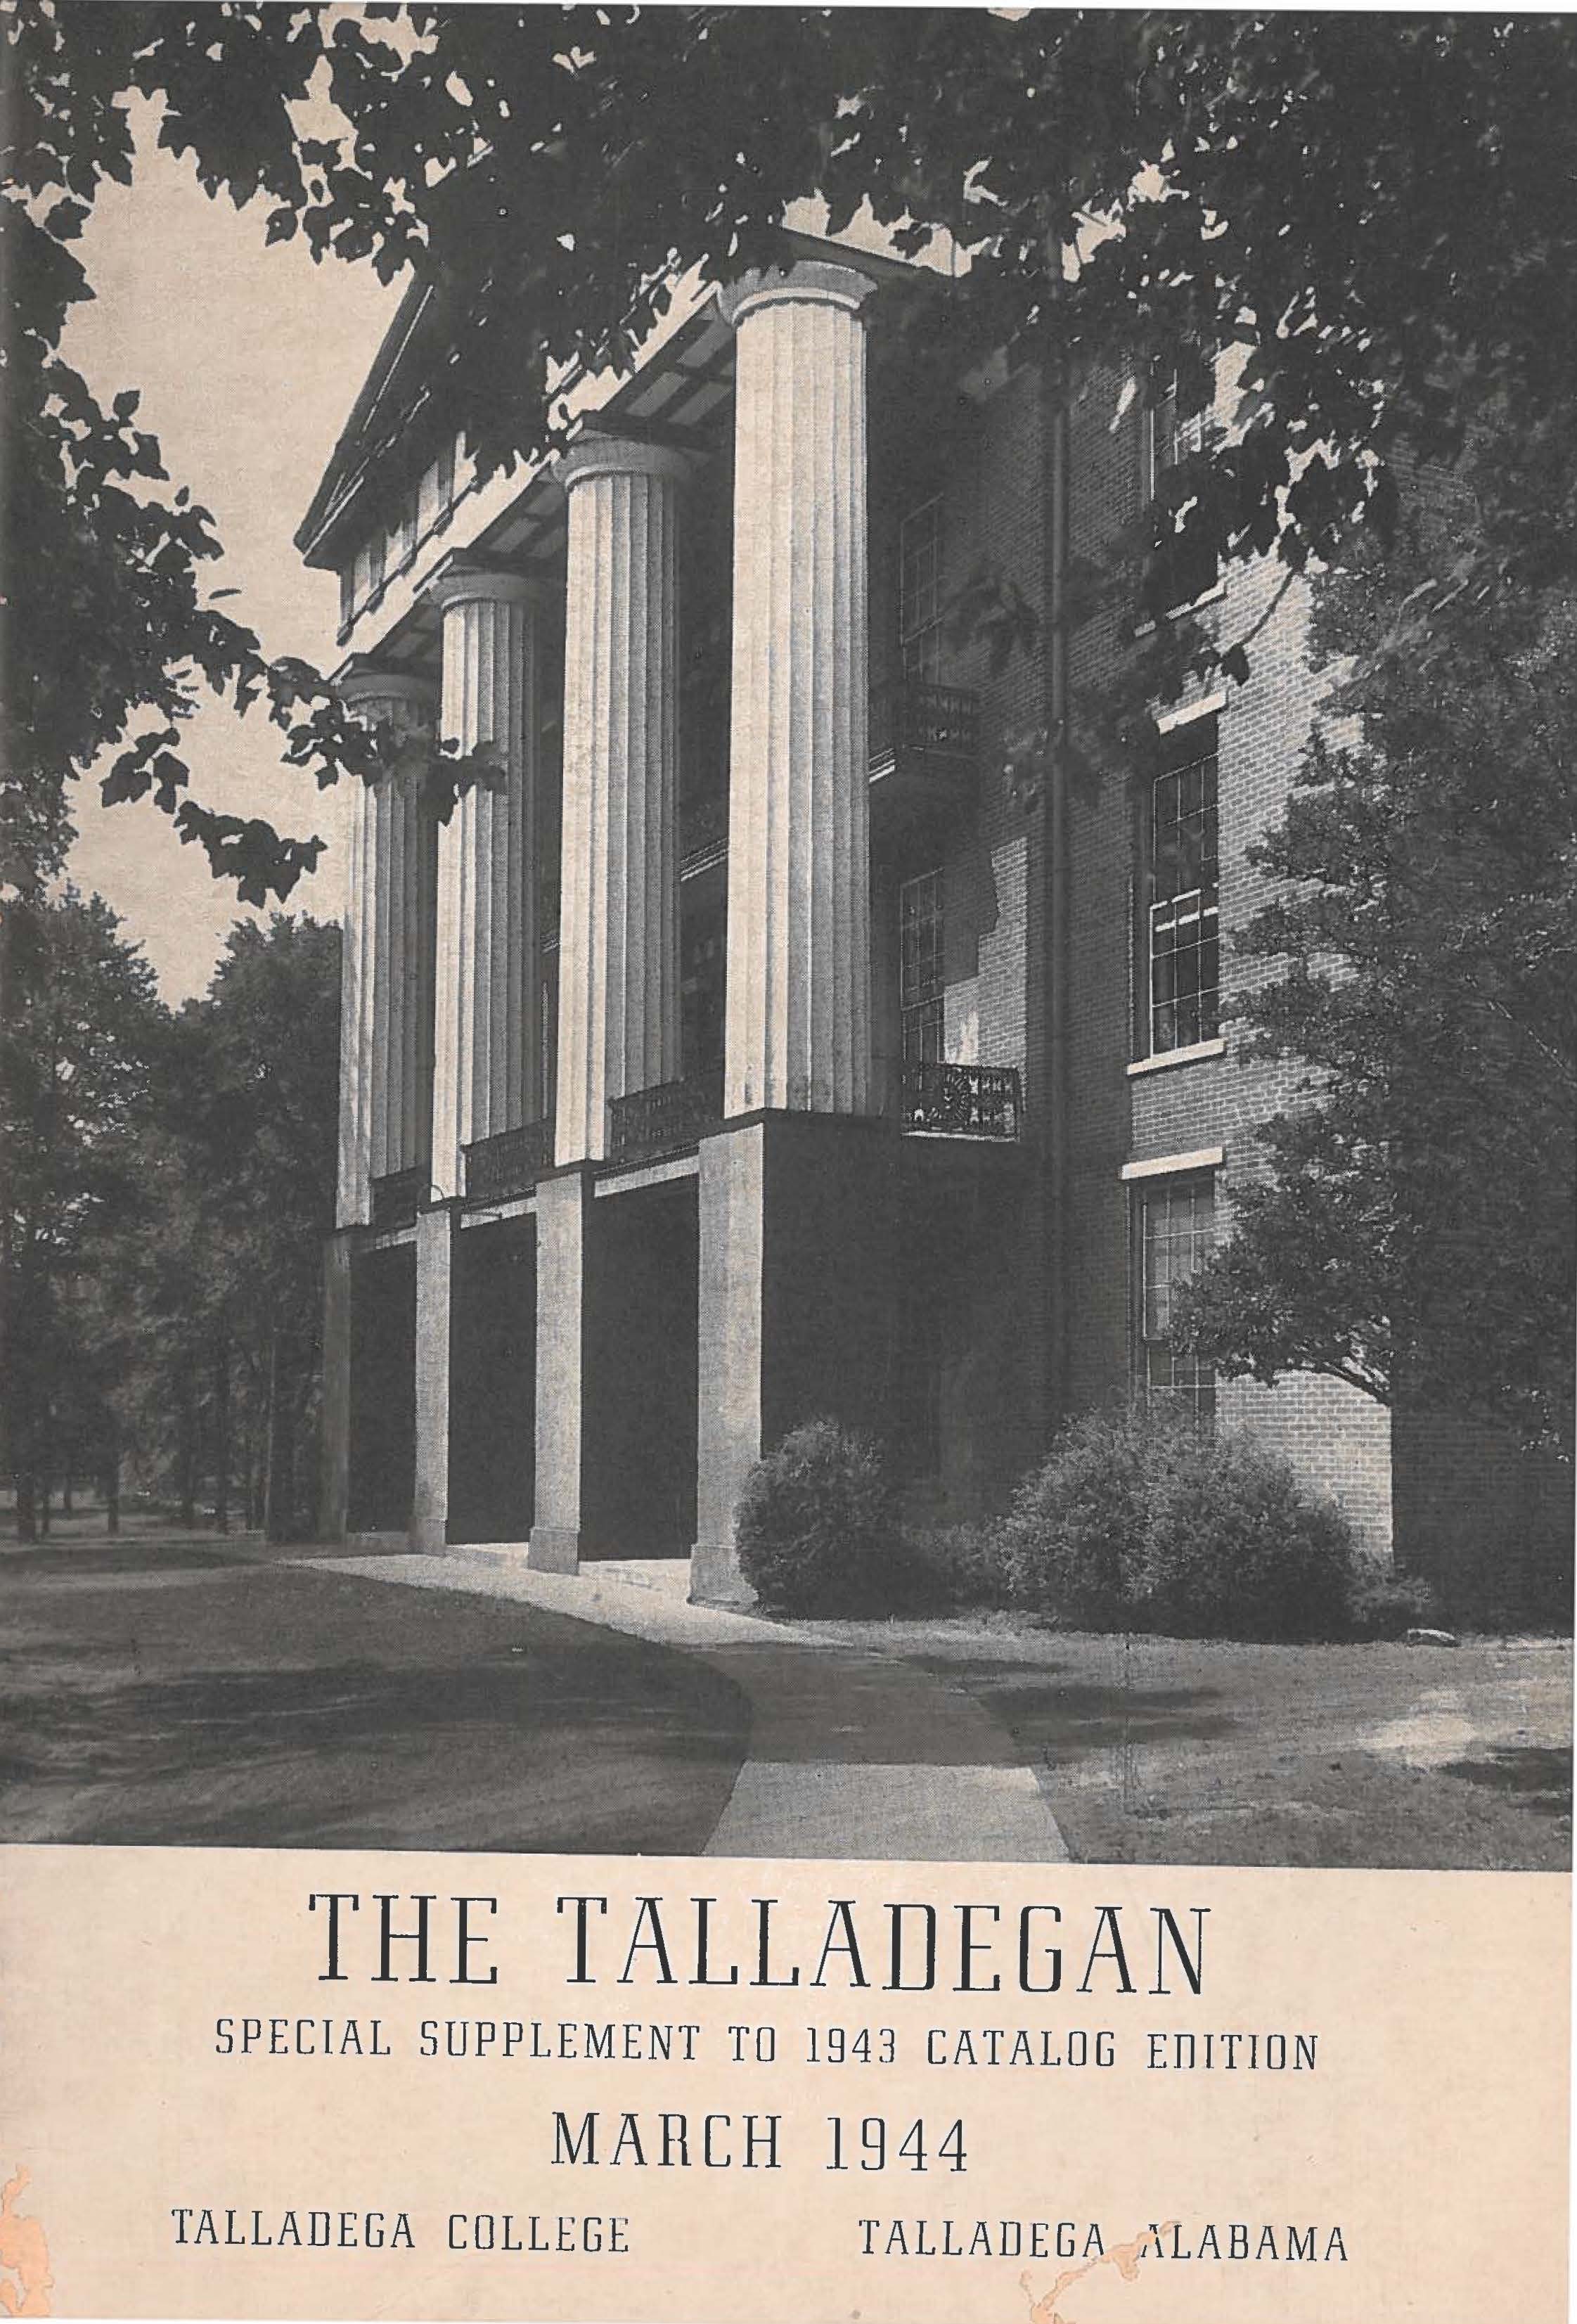 Talladega College 1944 Special Supplement